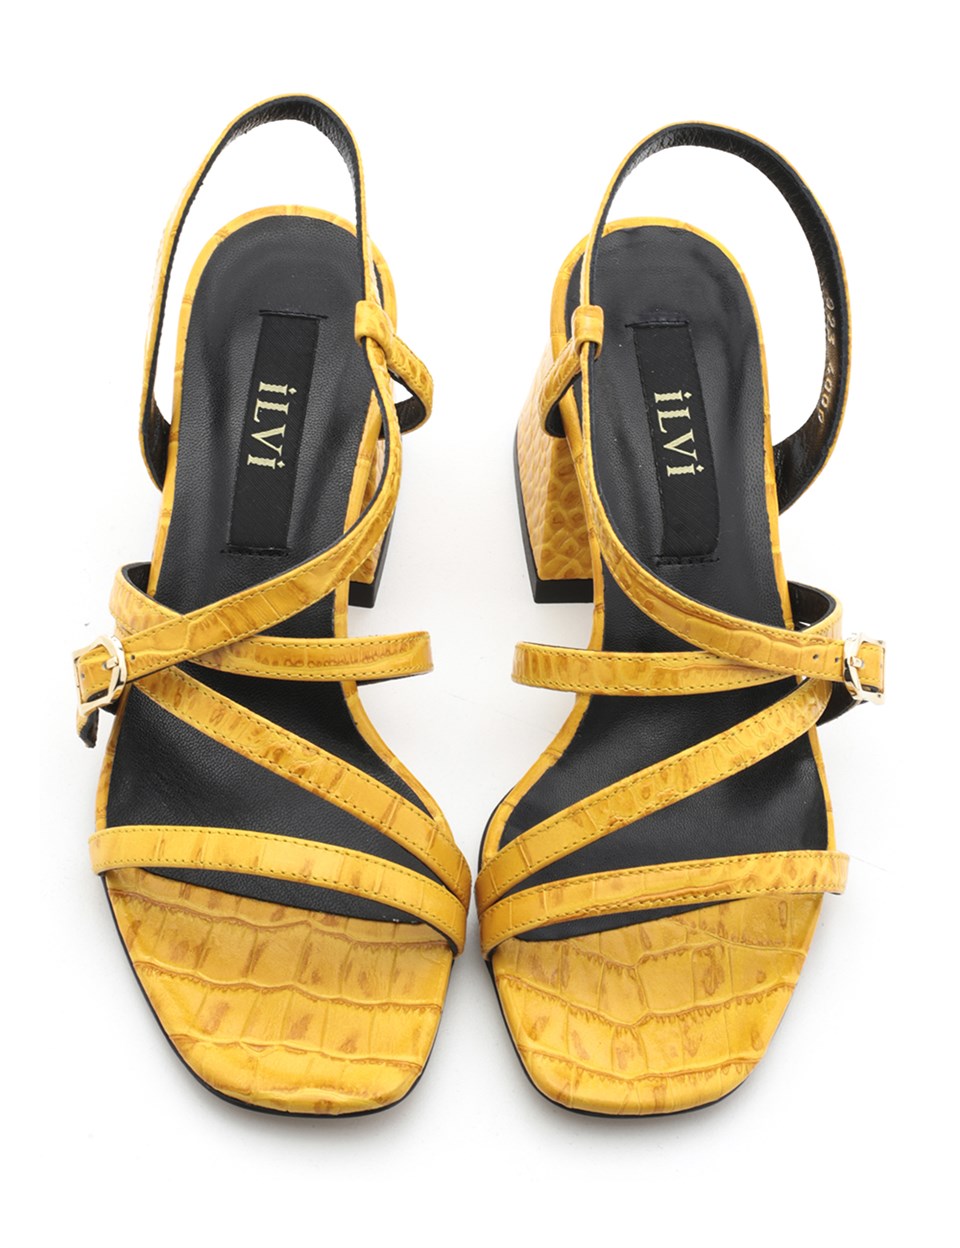 Nao Yellow Crocodile Leather Women's Heeled Sandal - İLVİ